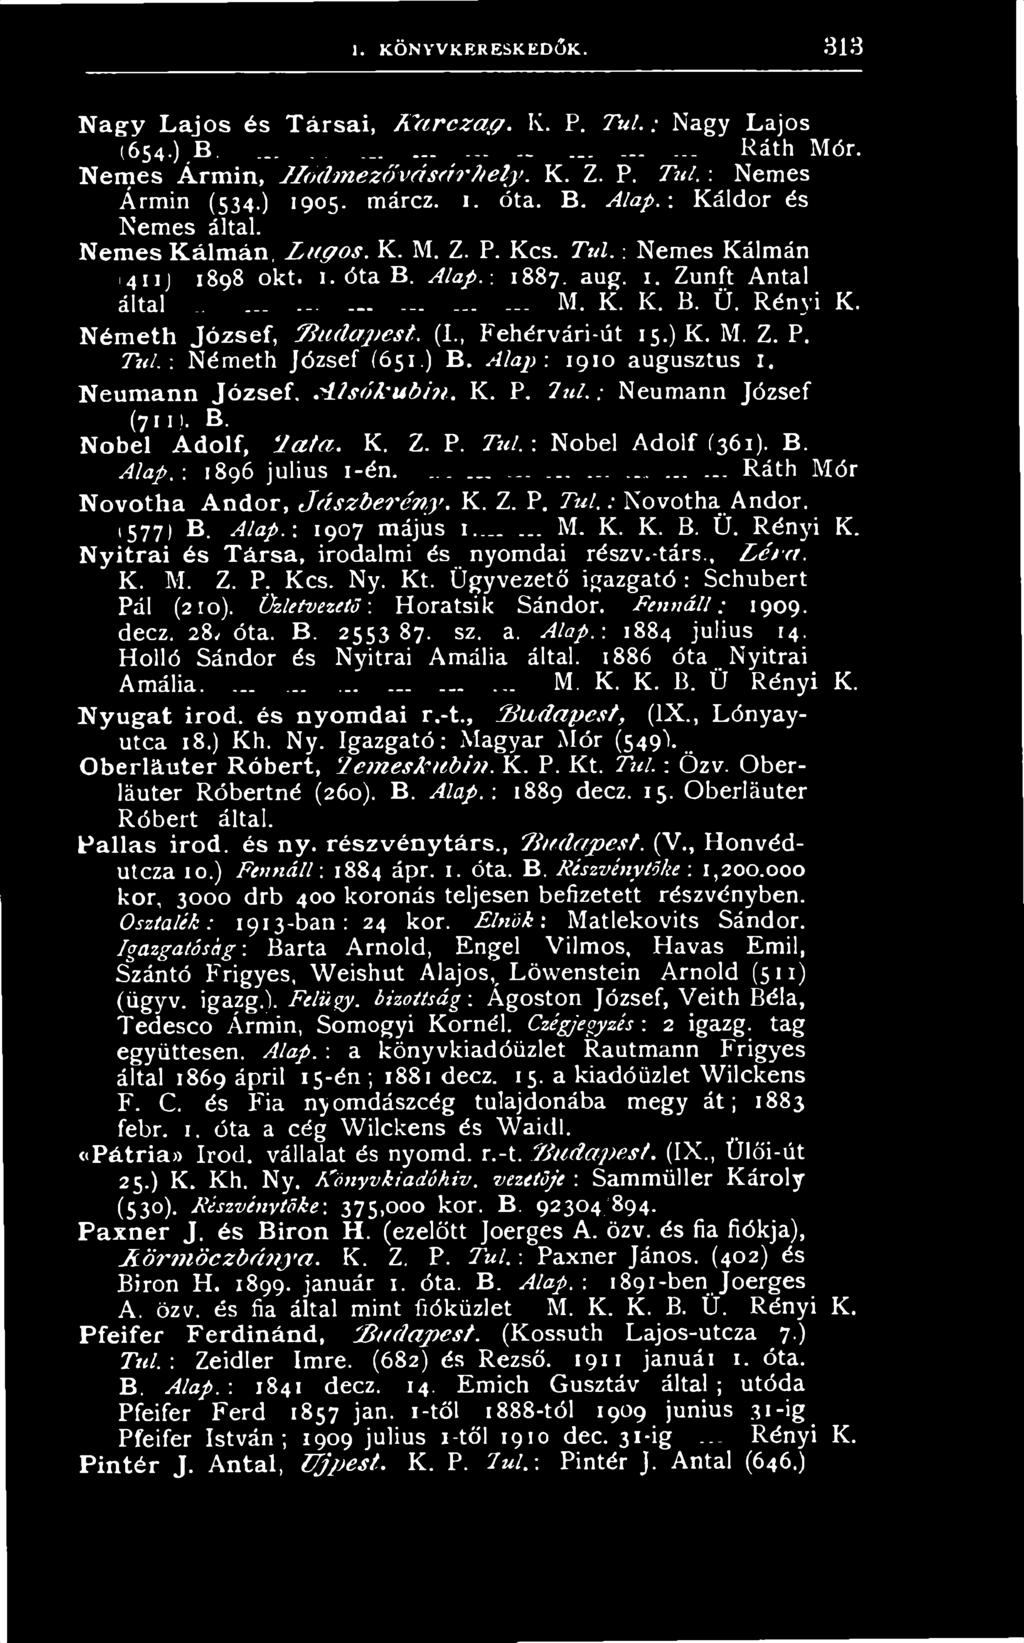 ...... Ráth Mór Novotha Andor, J á s z b e r é n y. K. Z. P. T ú l.: Novotha. Andor. (577) B. Alap.-. 1907 május 1... M. K. K. B. Ü. Rényi K. Nyitrai és Társa, irodalmi és nyomdai részv.-társ., L é m.